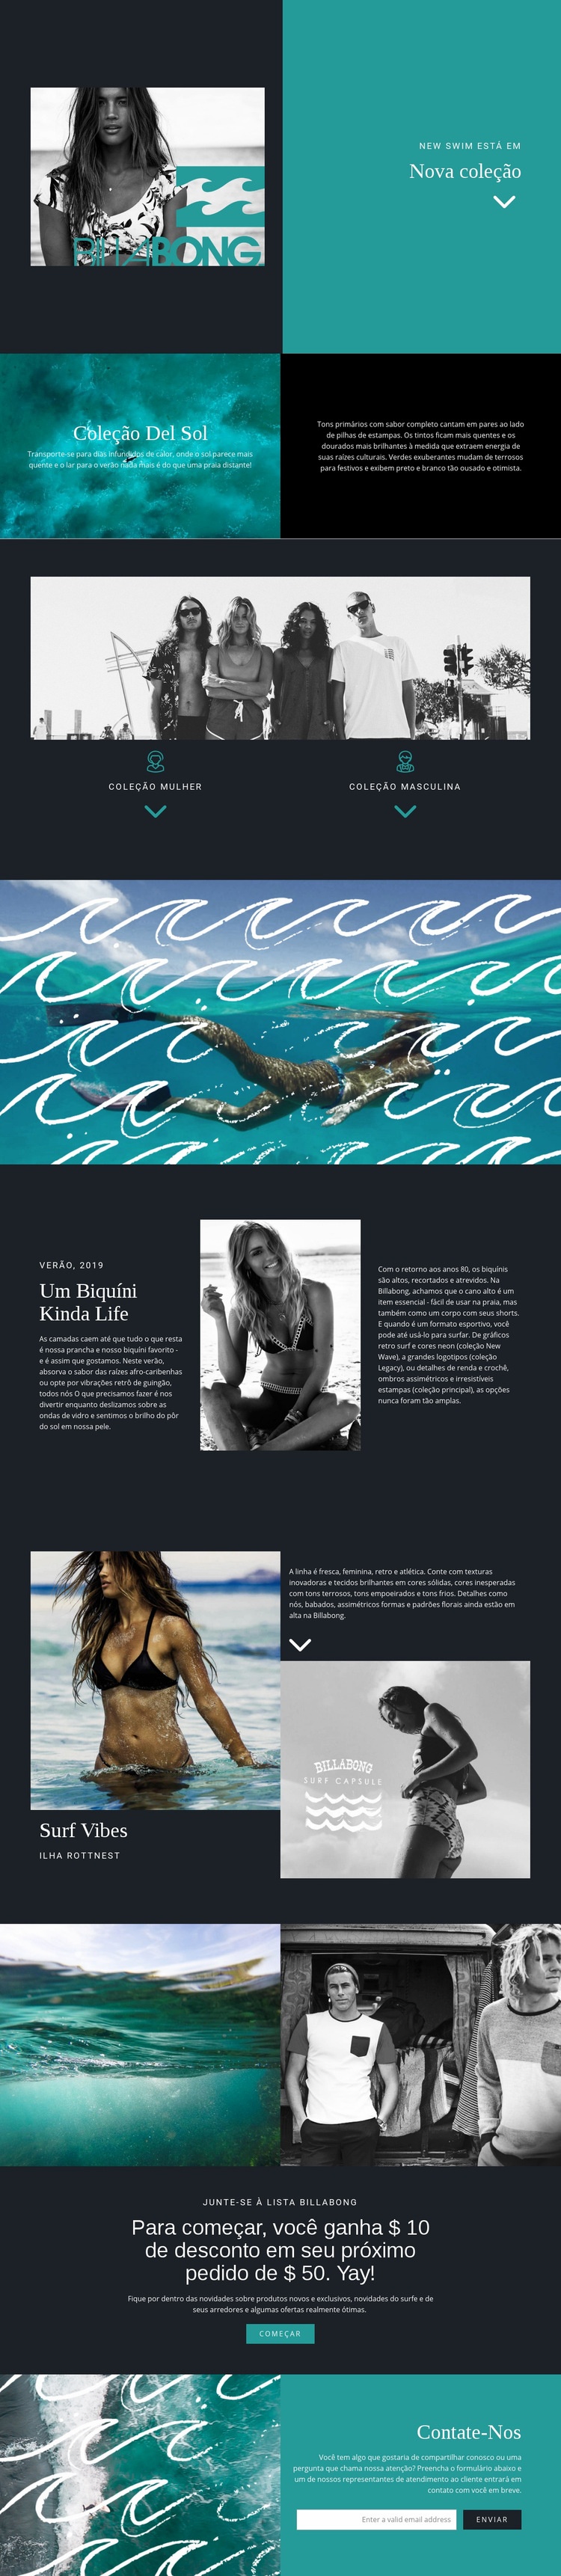 Nova coleção de moda praia Design do site